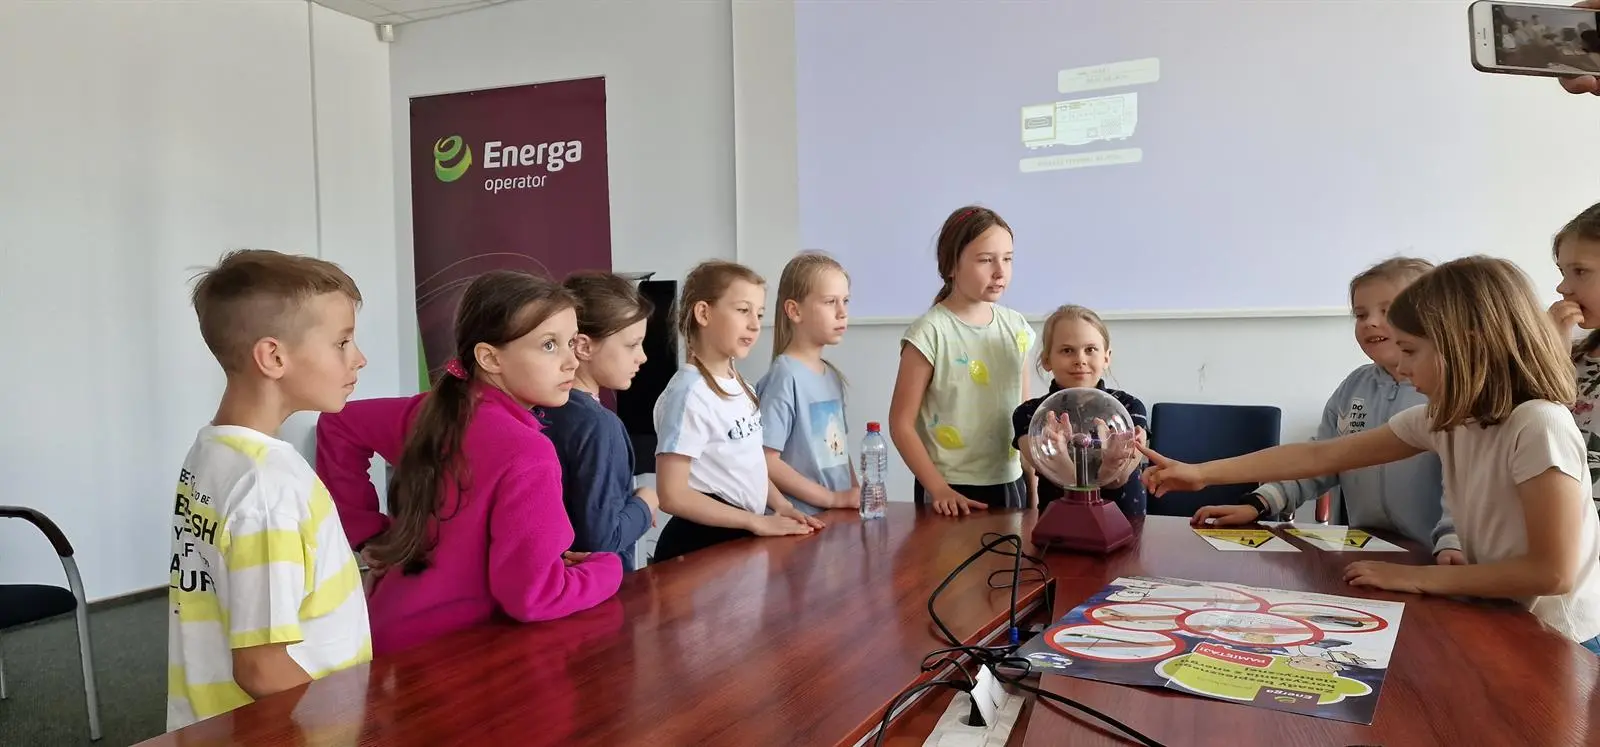 Uczniowie ze Szkoły Podstawowej nr 29 im. Jana Liszewskiego w Olsztynie podczas doświadczenia